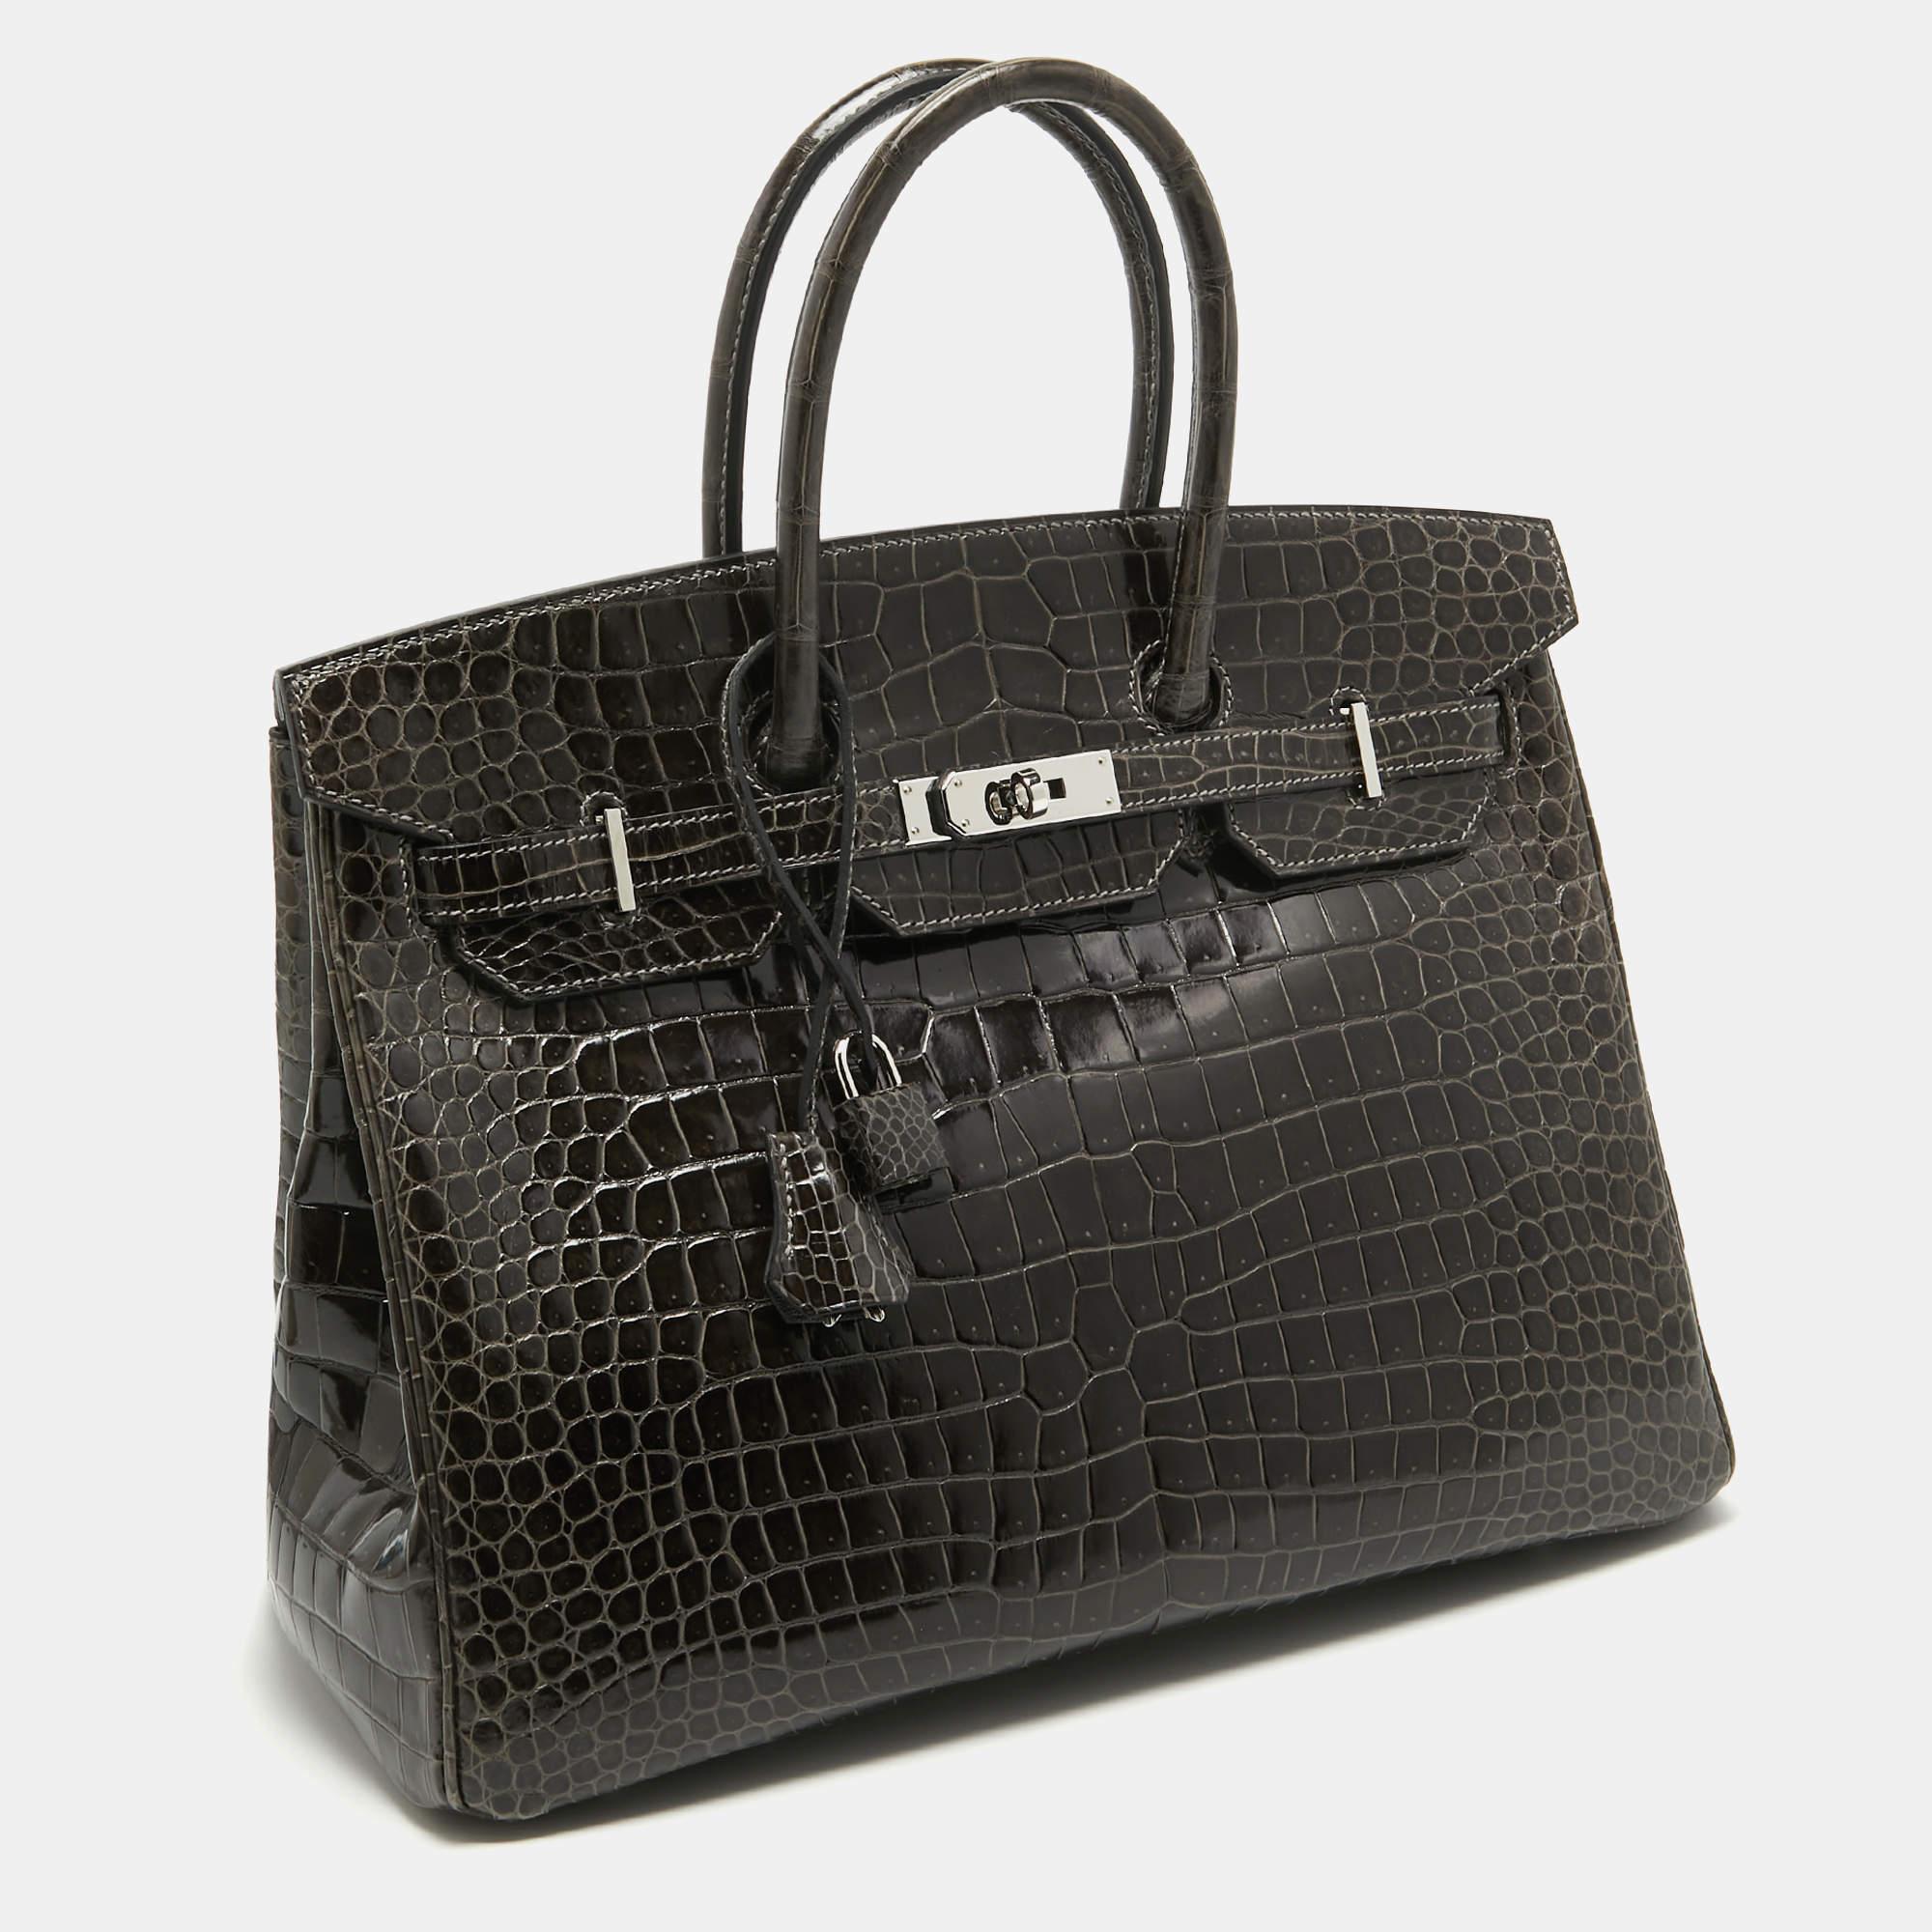 Die Hermès Birkin ist zu Recht eine der begehrtesten Handtaschen der Welt. Die Birkin wird von erfahrenen Kunsthandwerkern in stundenlanger Handarbeit aus hochwertigem Leder hergestellt. Diese Birkin 35 Tasche aus Krokodilporosus wurde mit viel